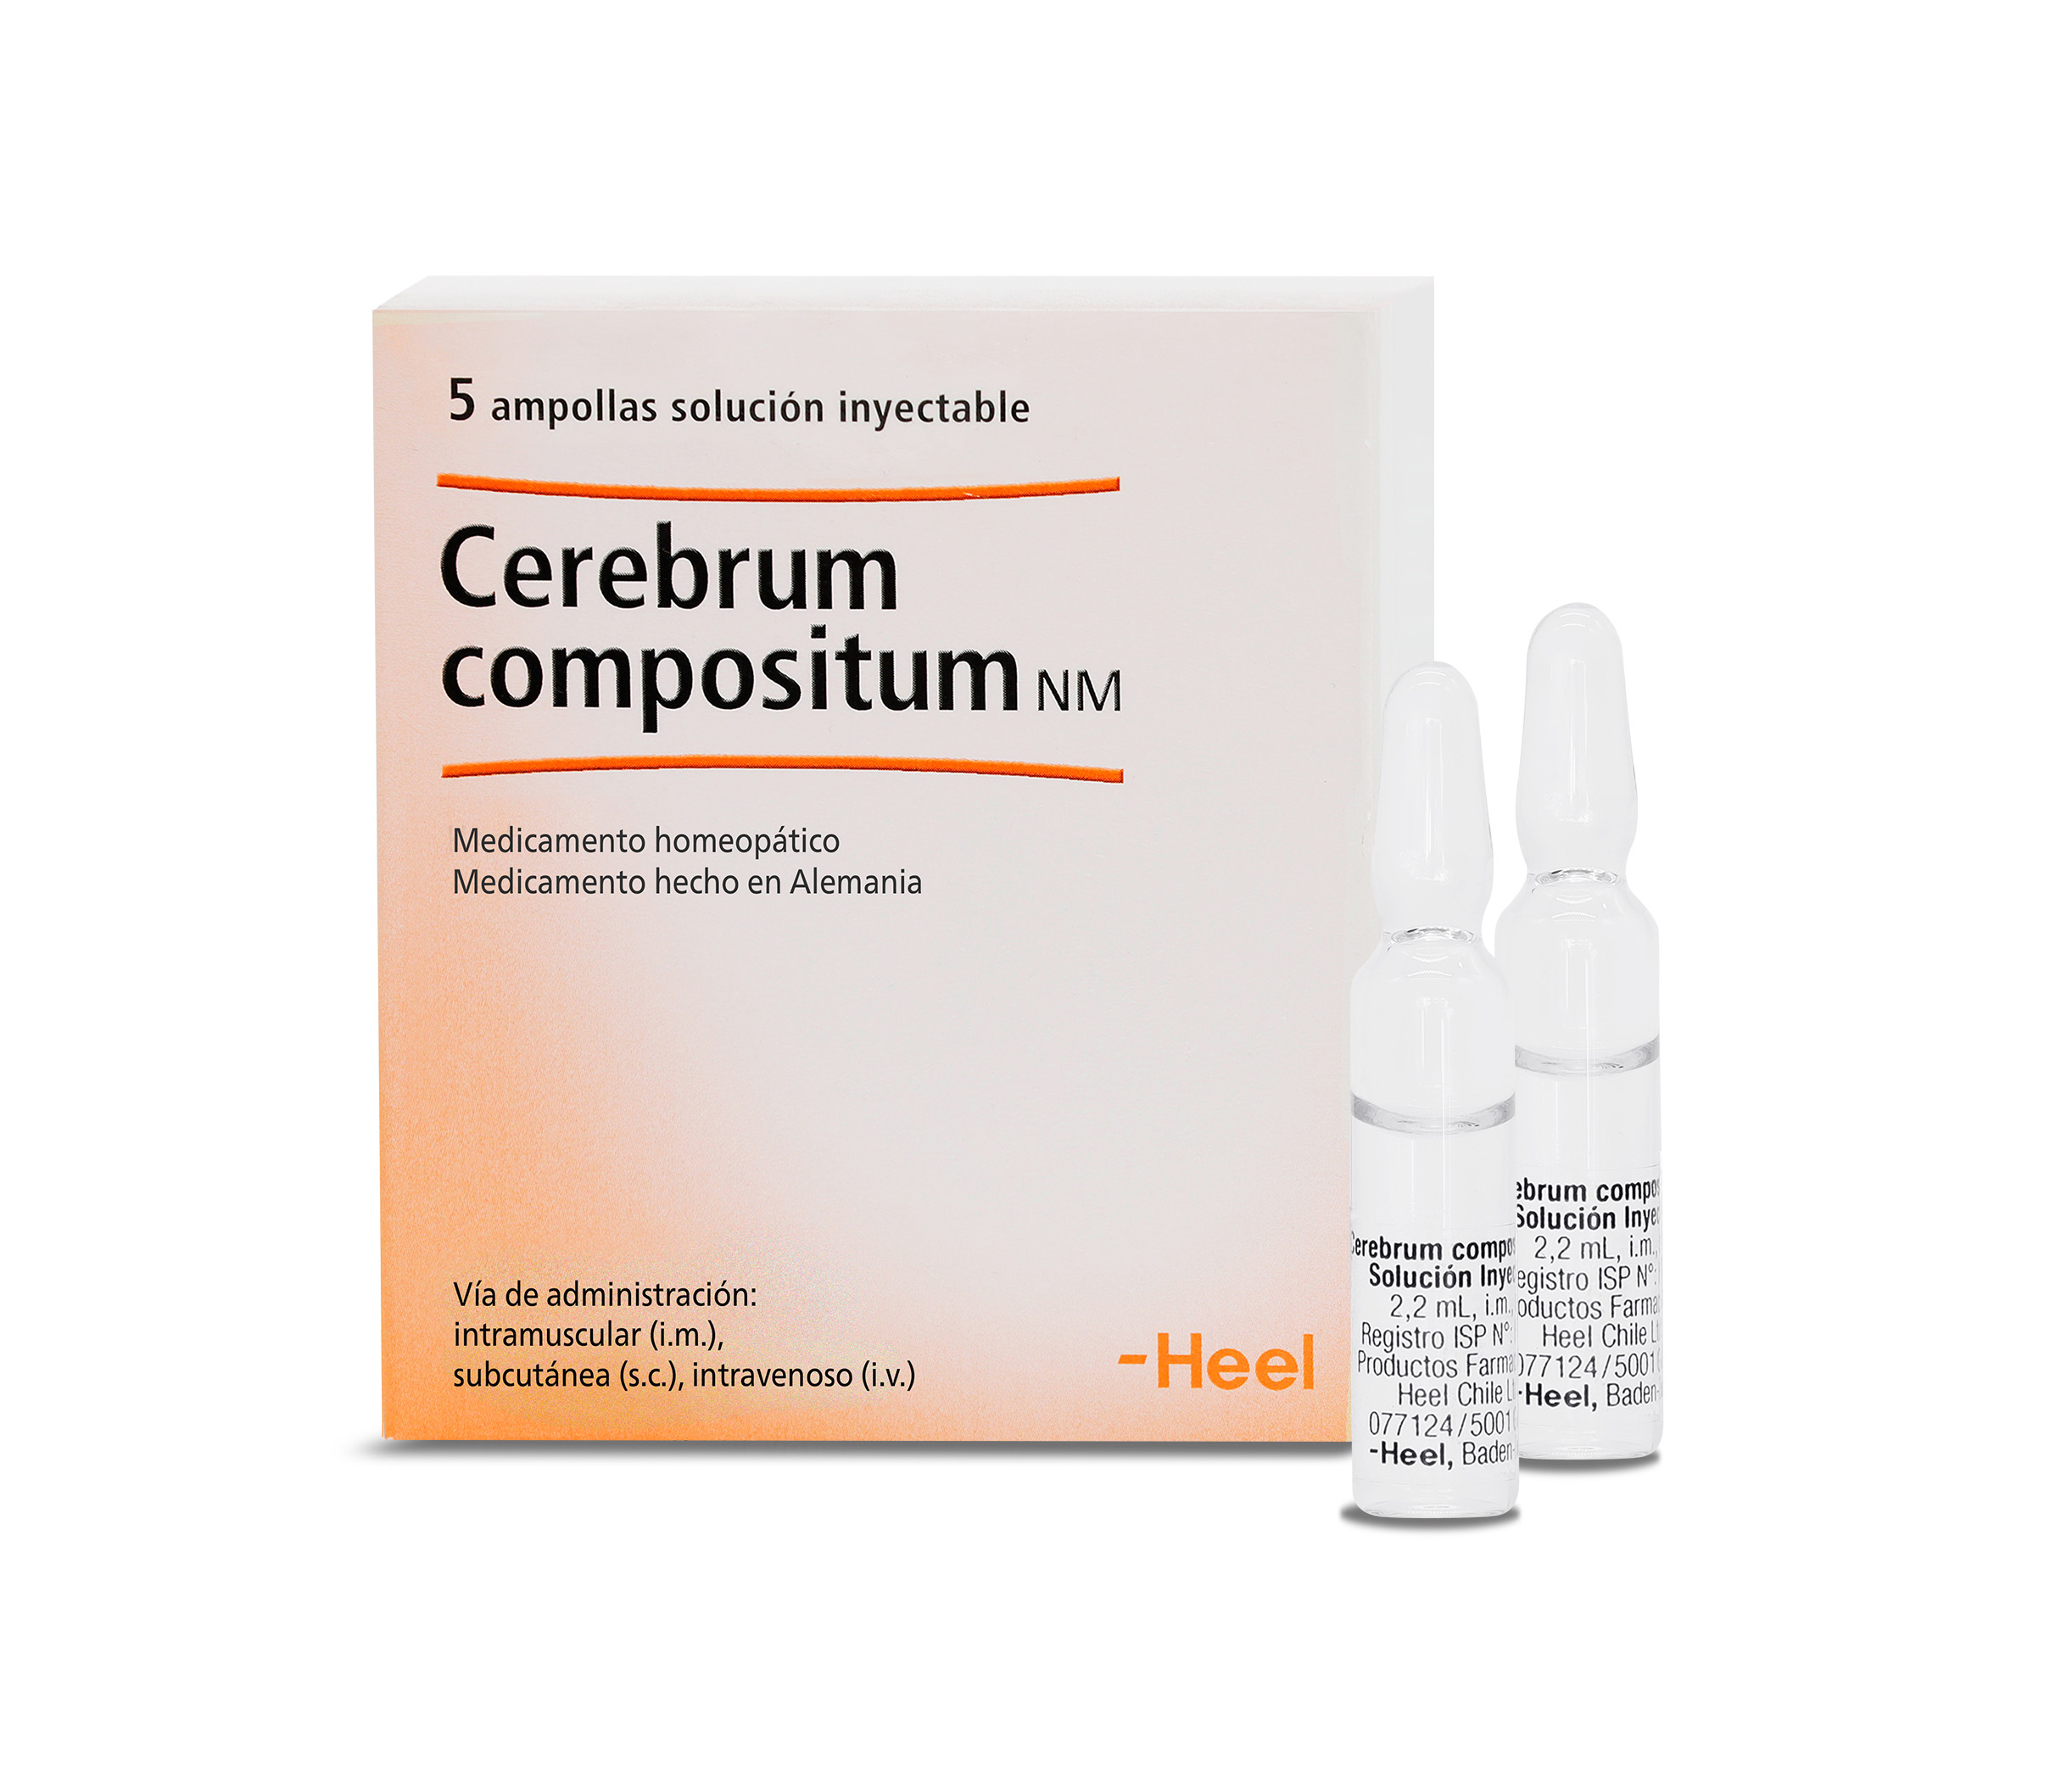 Cerebrum compositum NM Inyectable